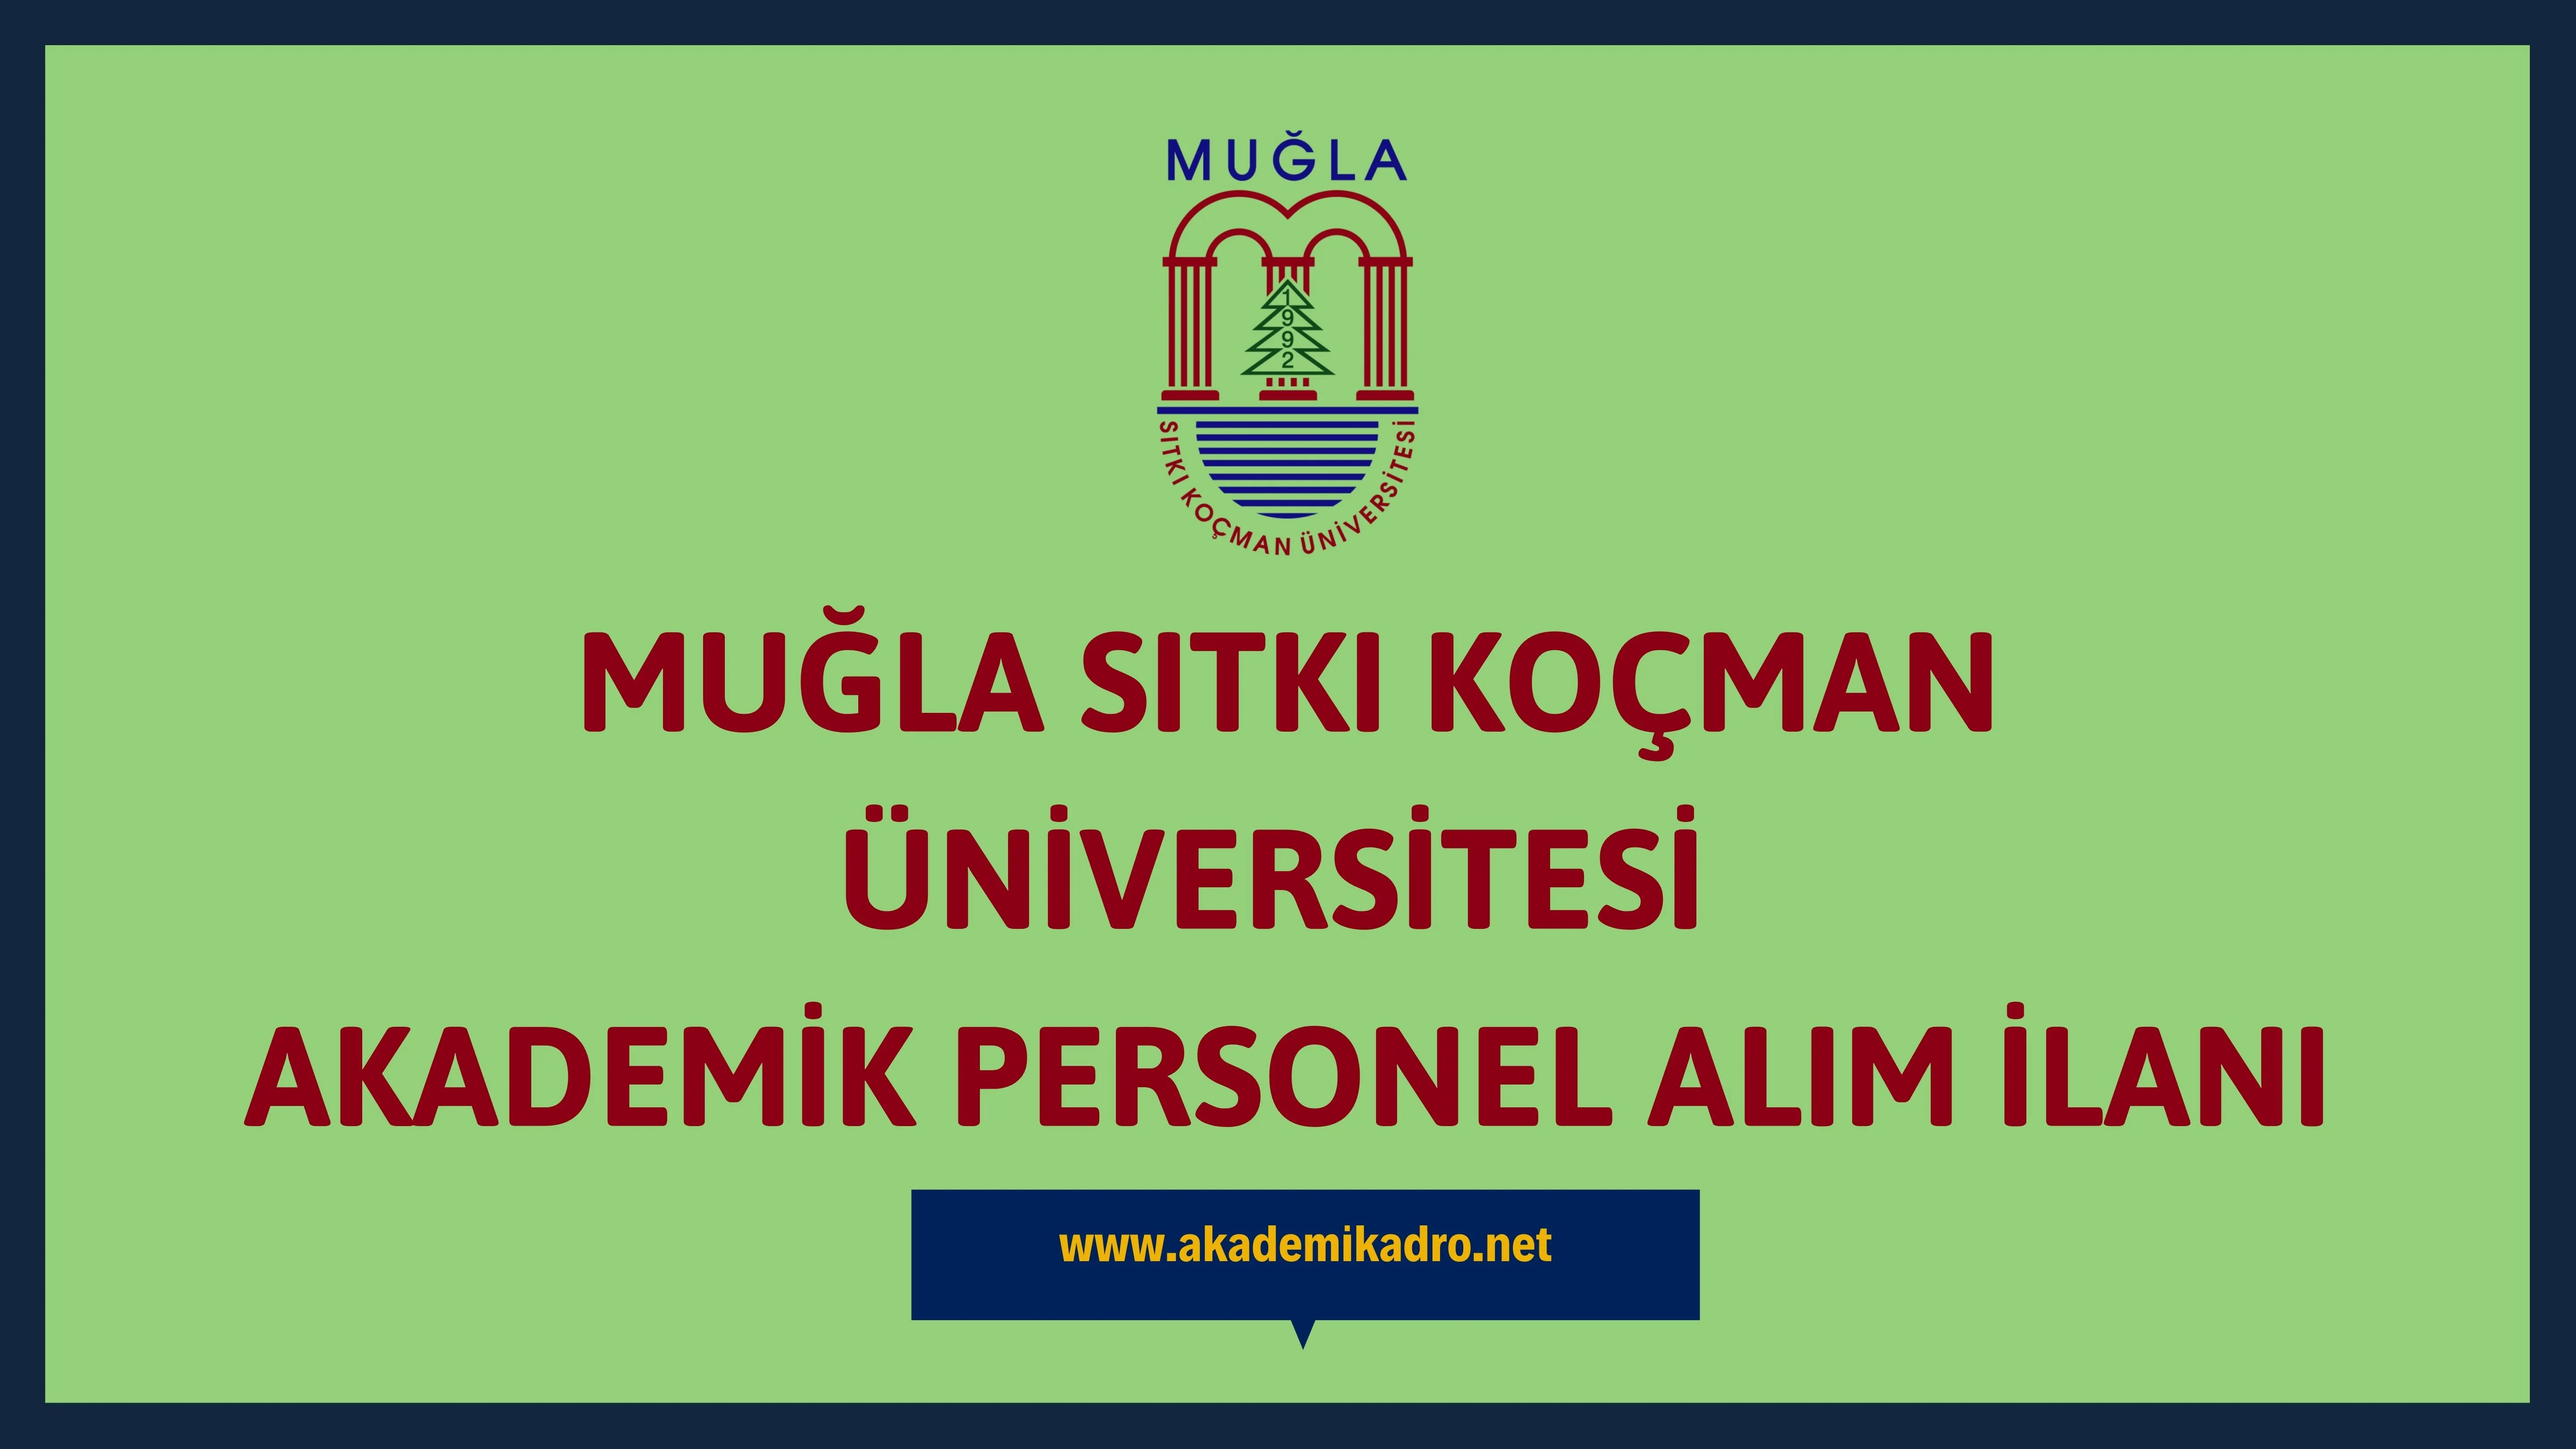 Muğla Sıtkı Koçman Üniversitesi birçok alandan 40 Akademik personel alacak.